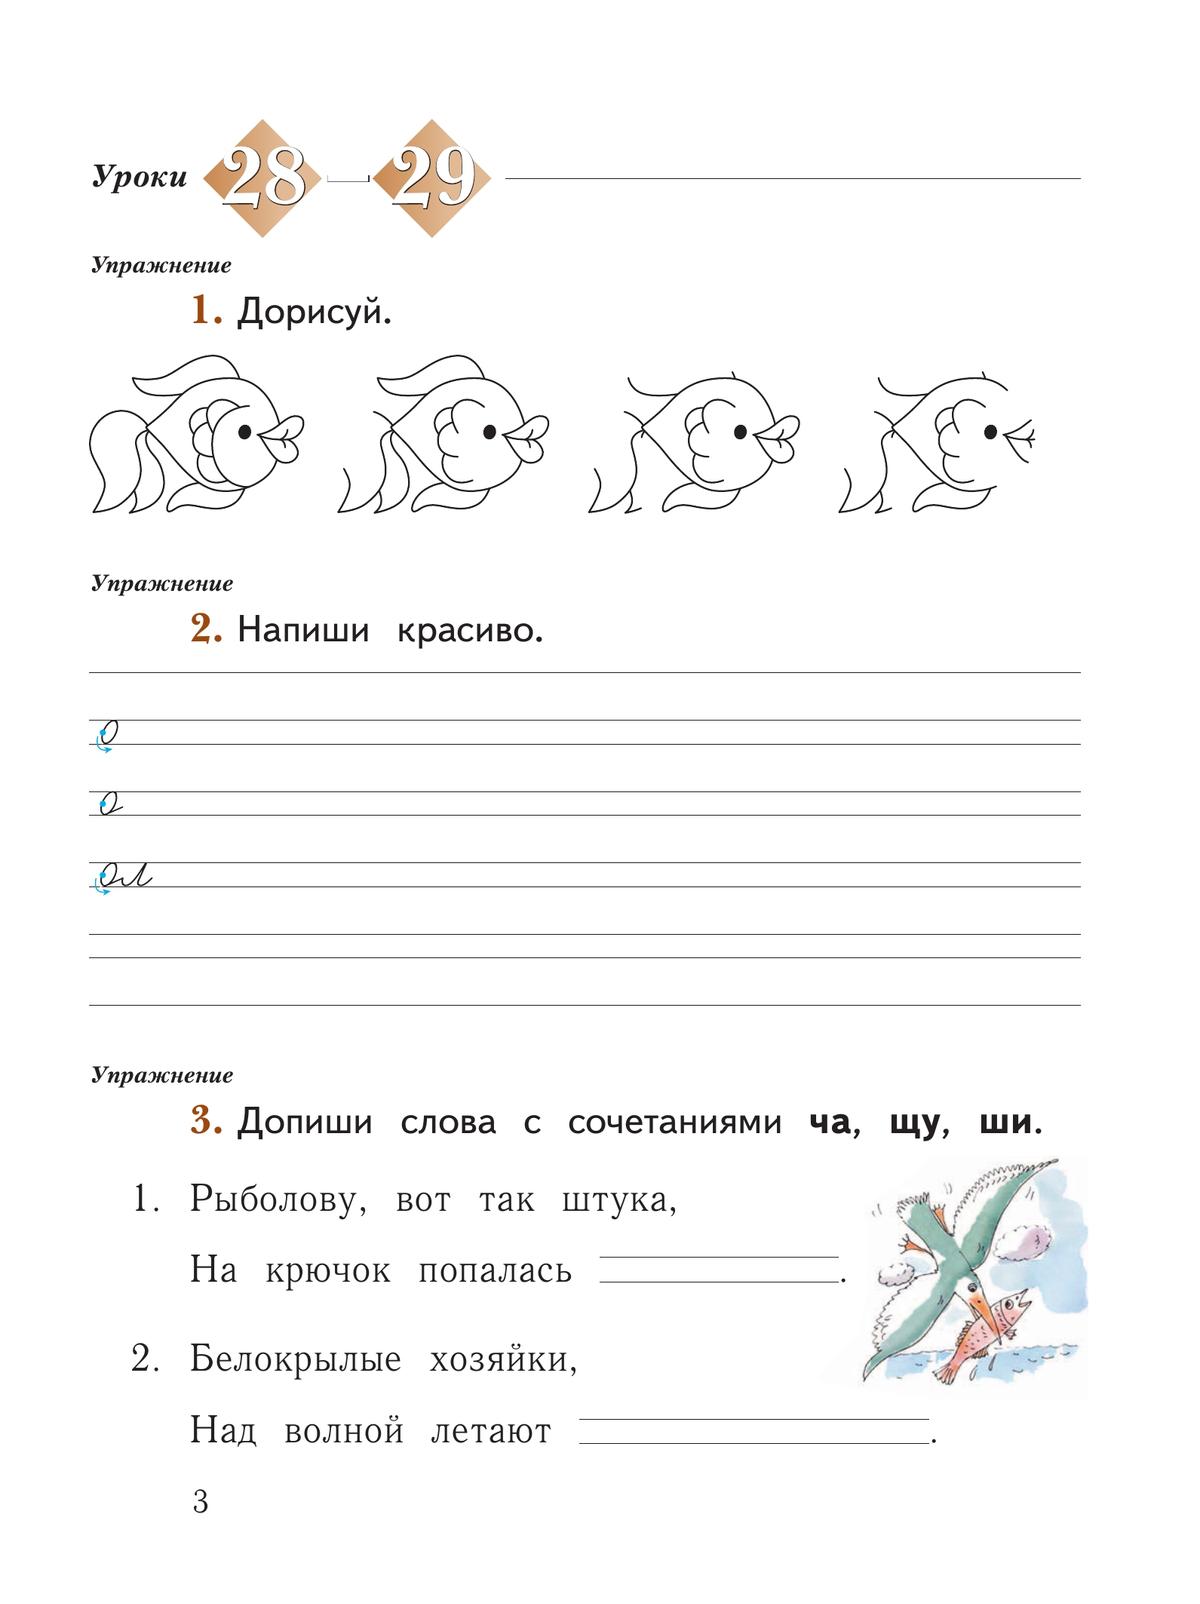 Русский язык. 1 класс. Рабочая тетрадь. В 2 частях. Часть 2 4